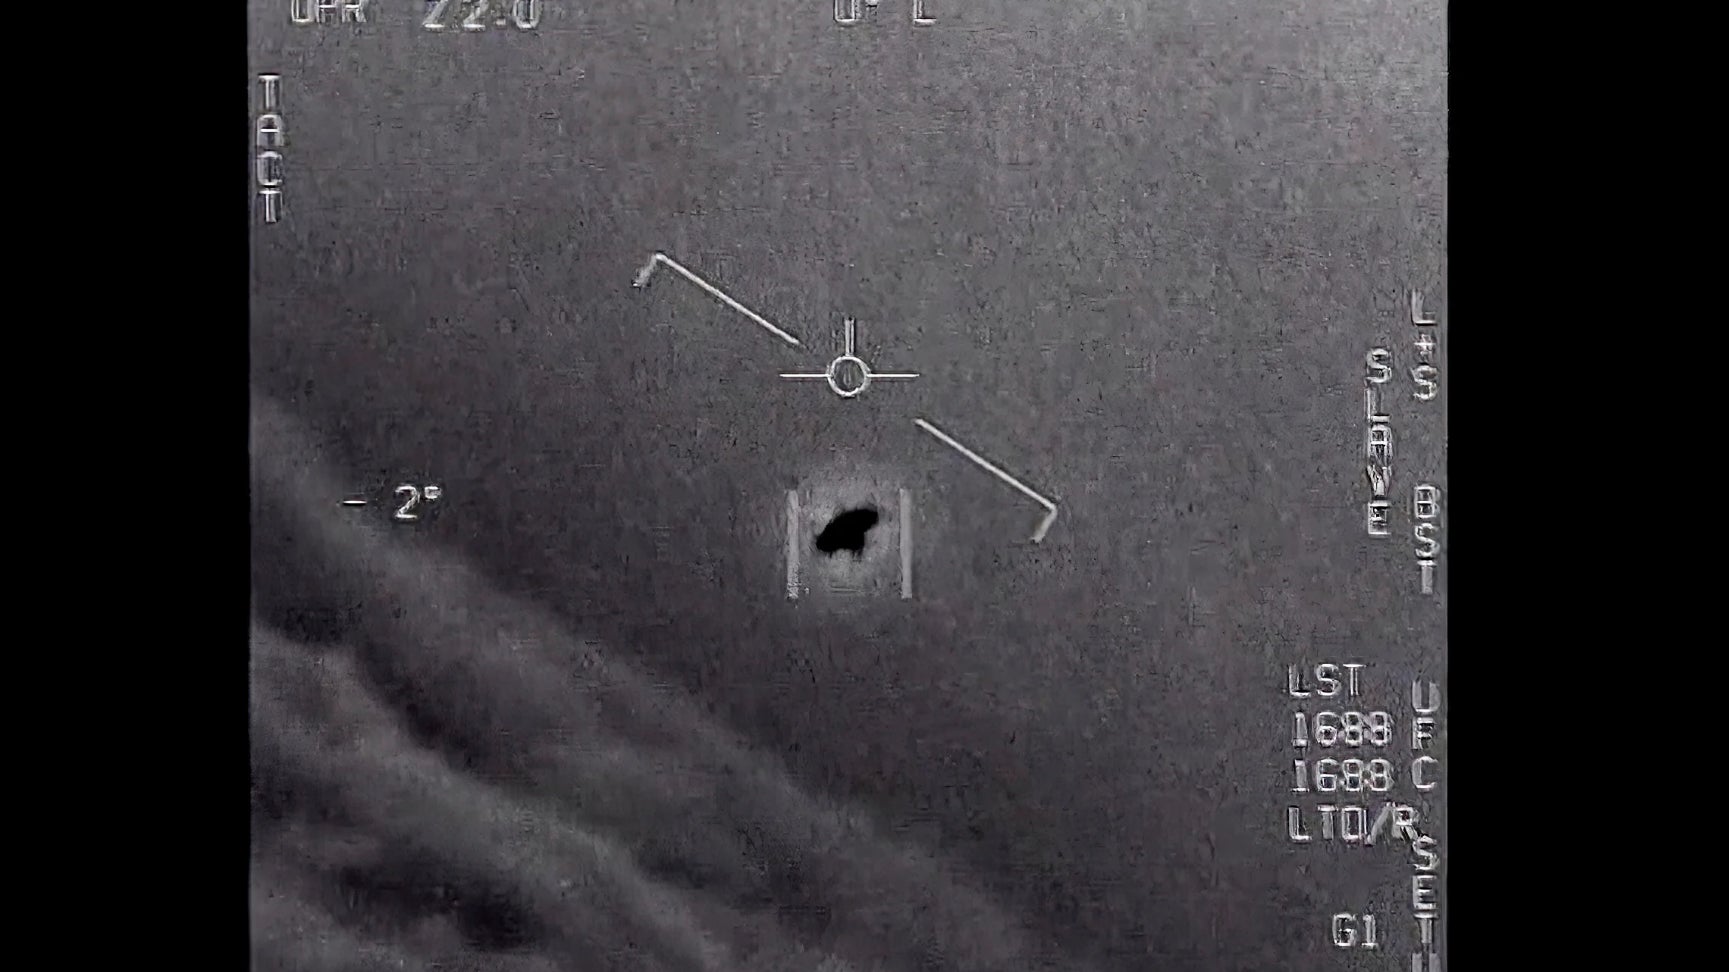 Япония начинает расследование НЛО после того, как ее назвали «горячей точкой» из-за наблюдений